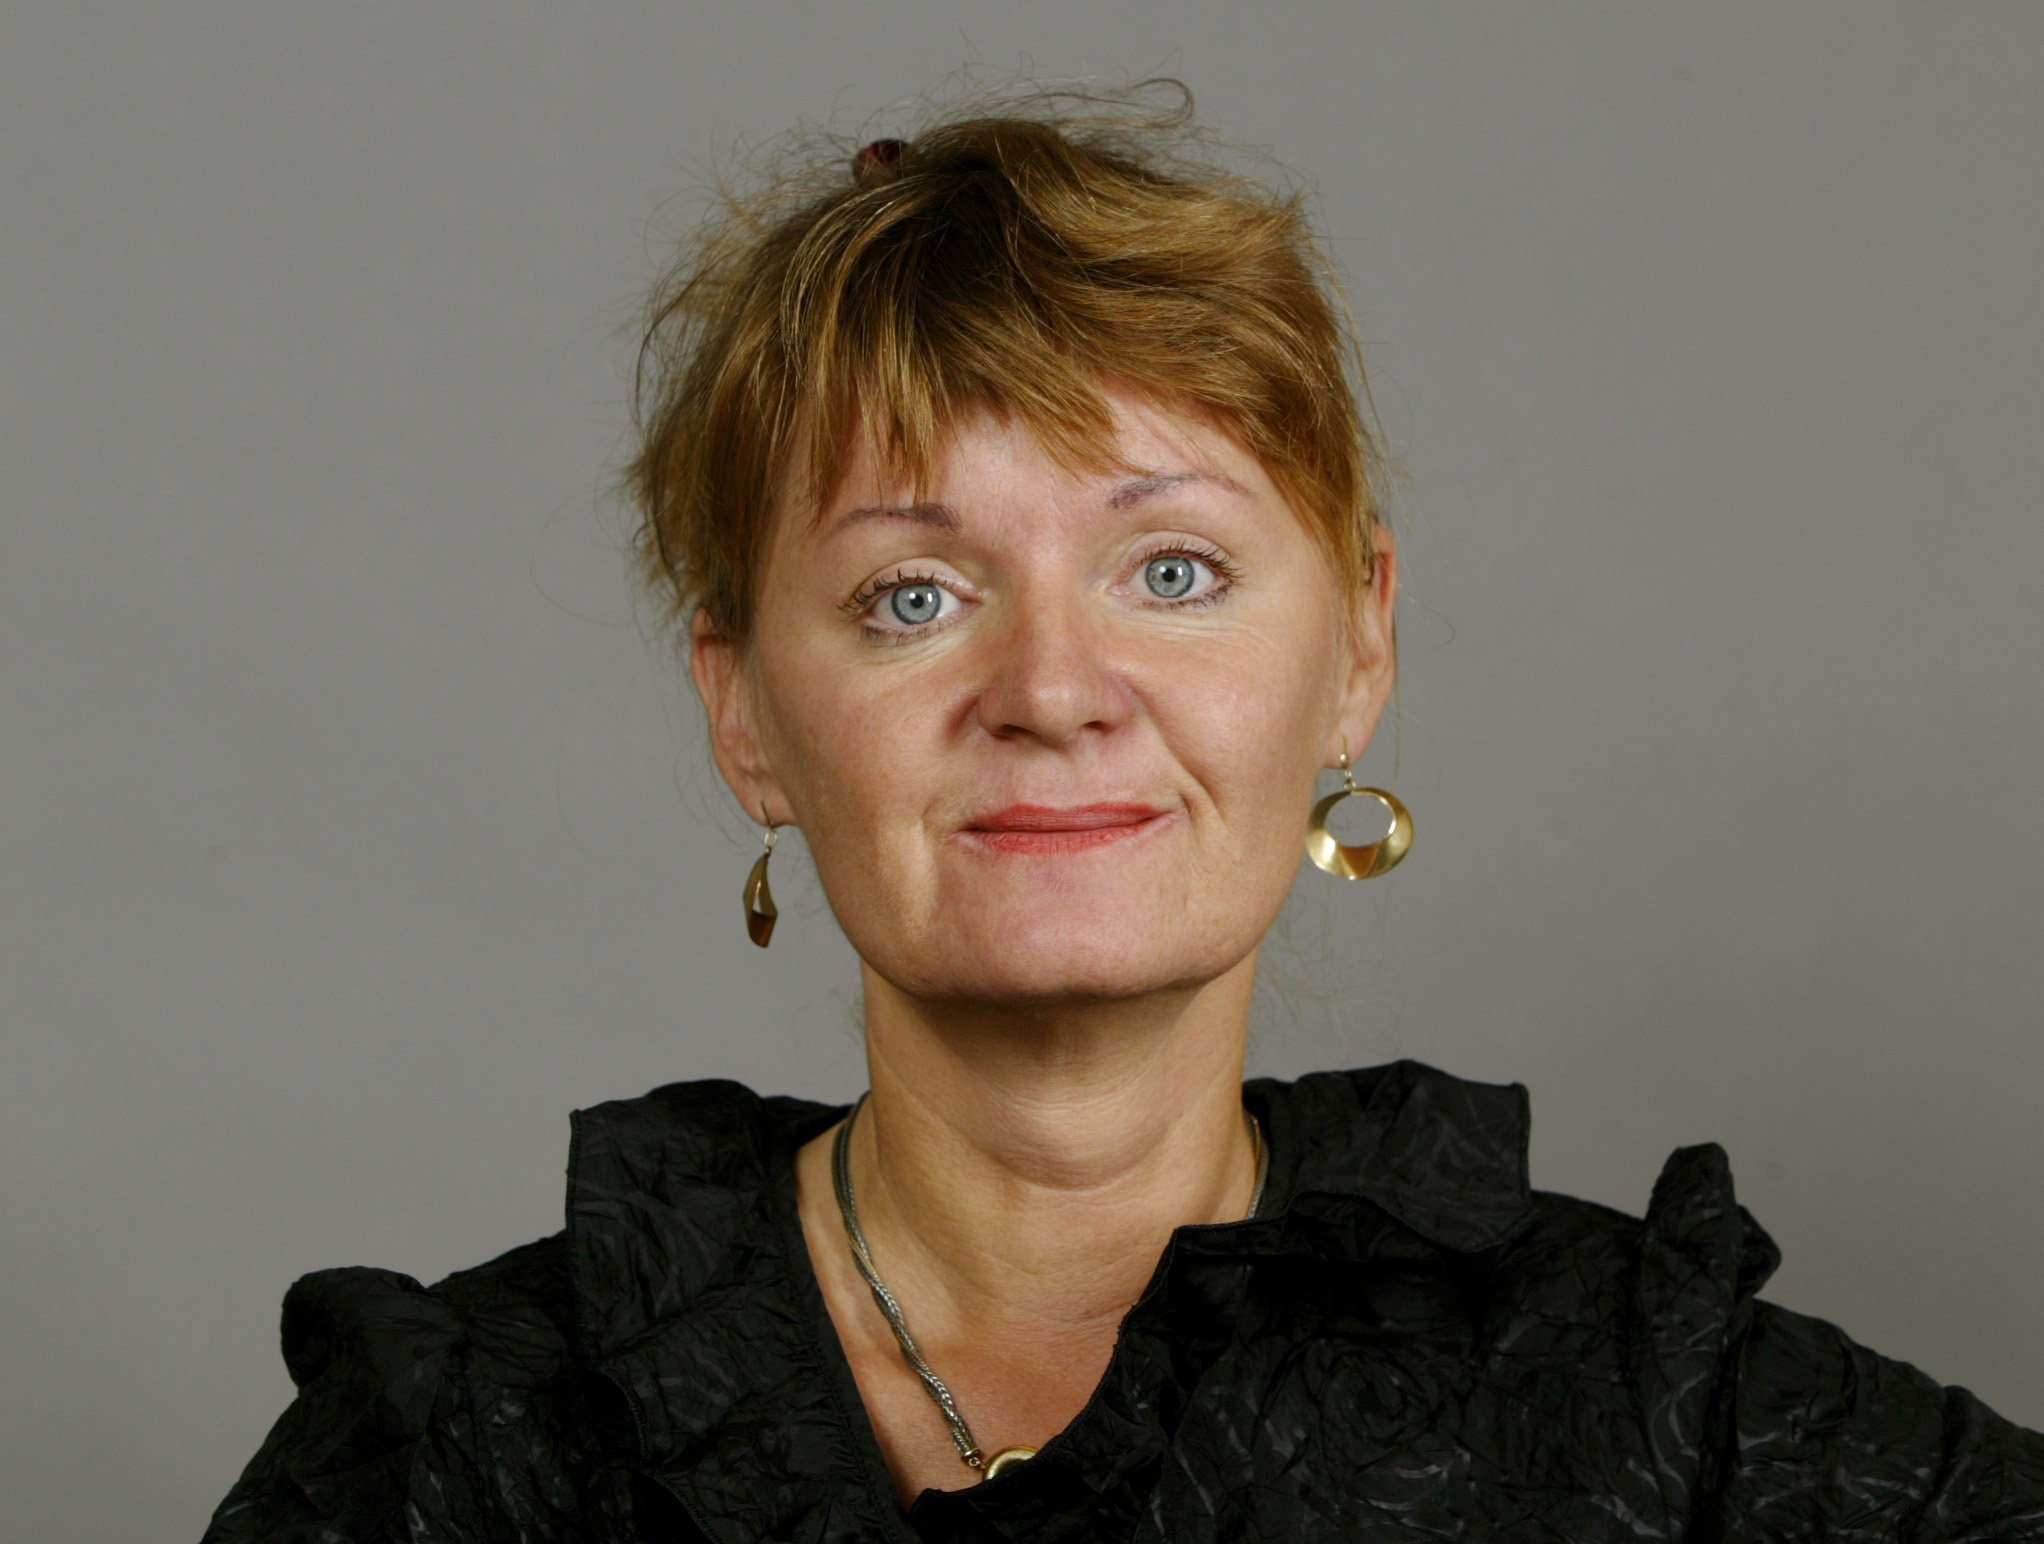 Carina Hägg, Alliansen, Feminism, Gudrun Schyman, Feministiskt initiativ, Riksdagsvalet 2010, Sverigedemokraterna